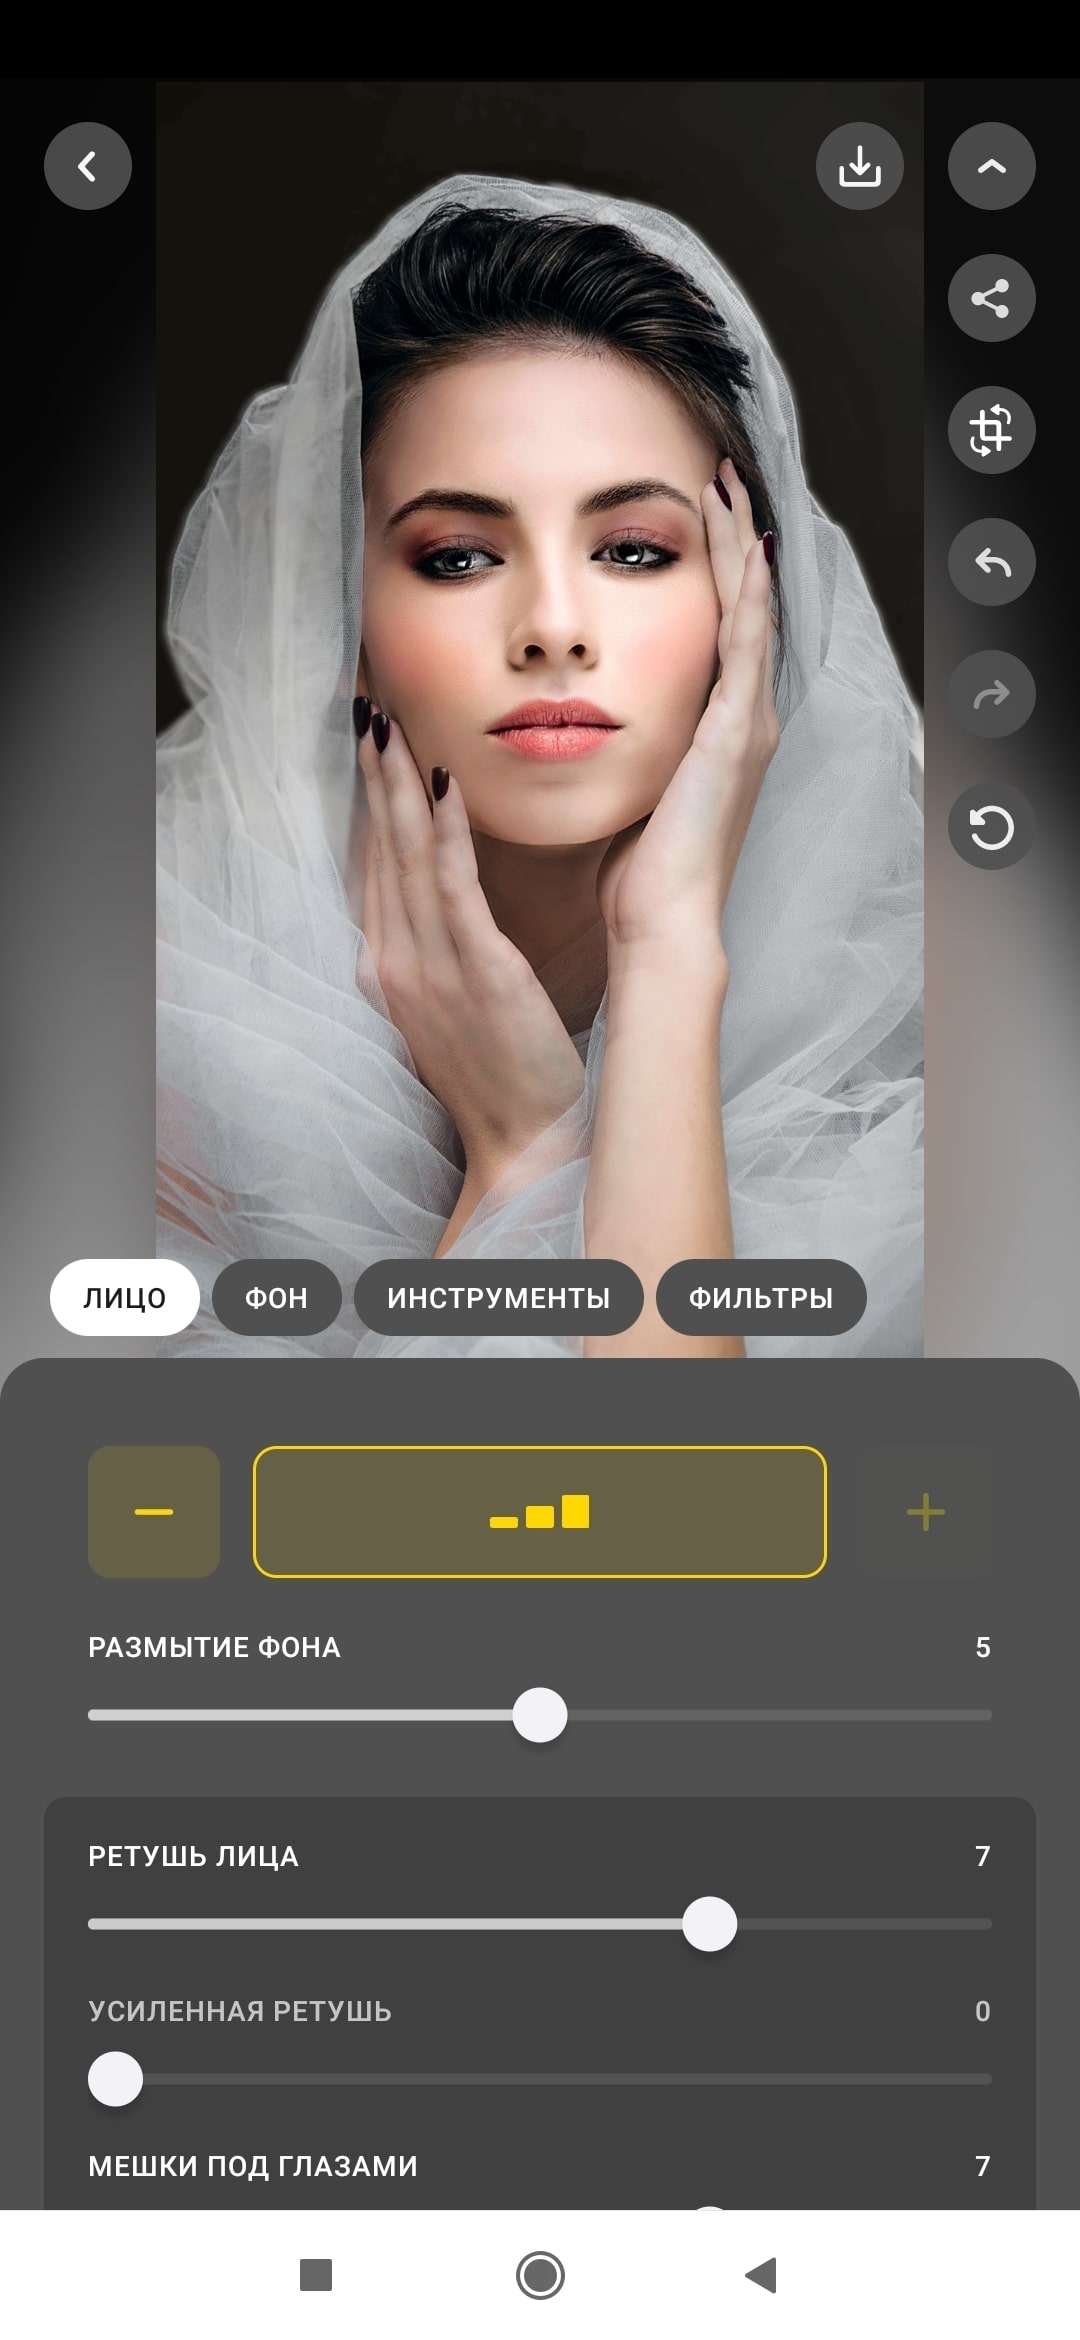 Приложения для редактирования фото на андроид бесплатно на русском